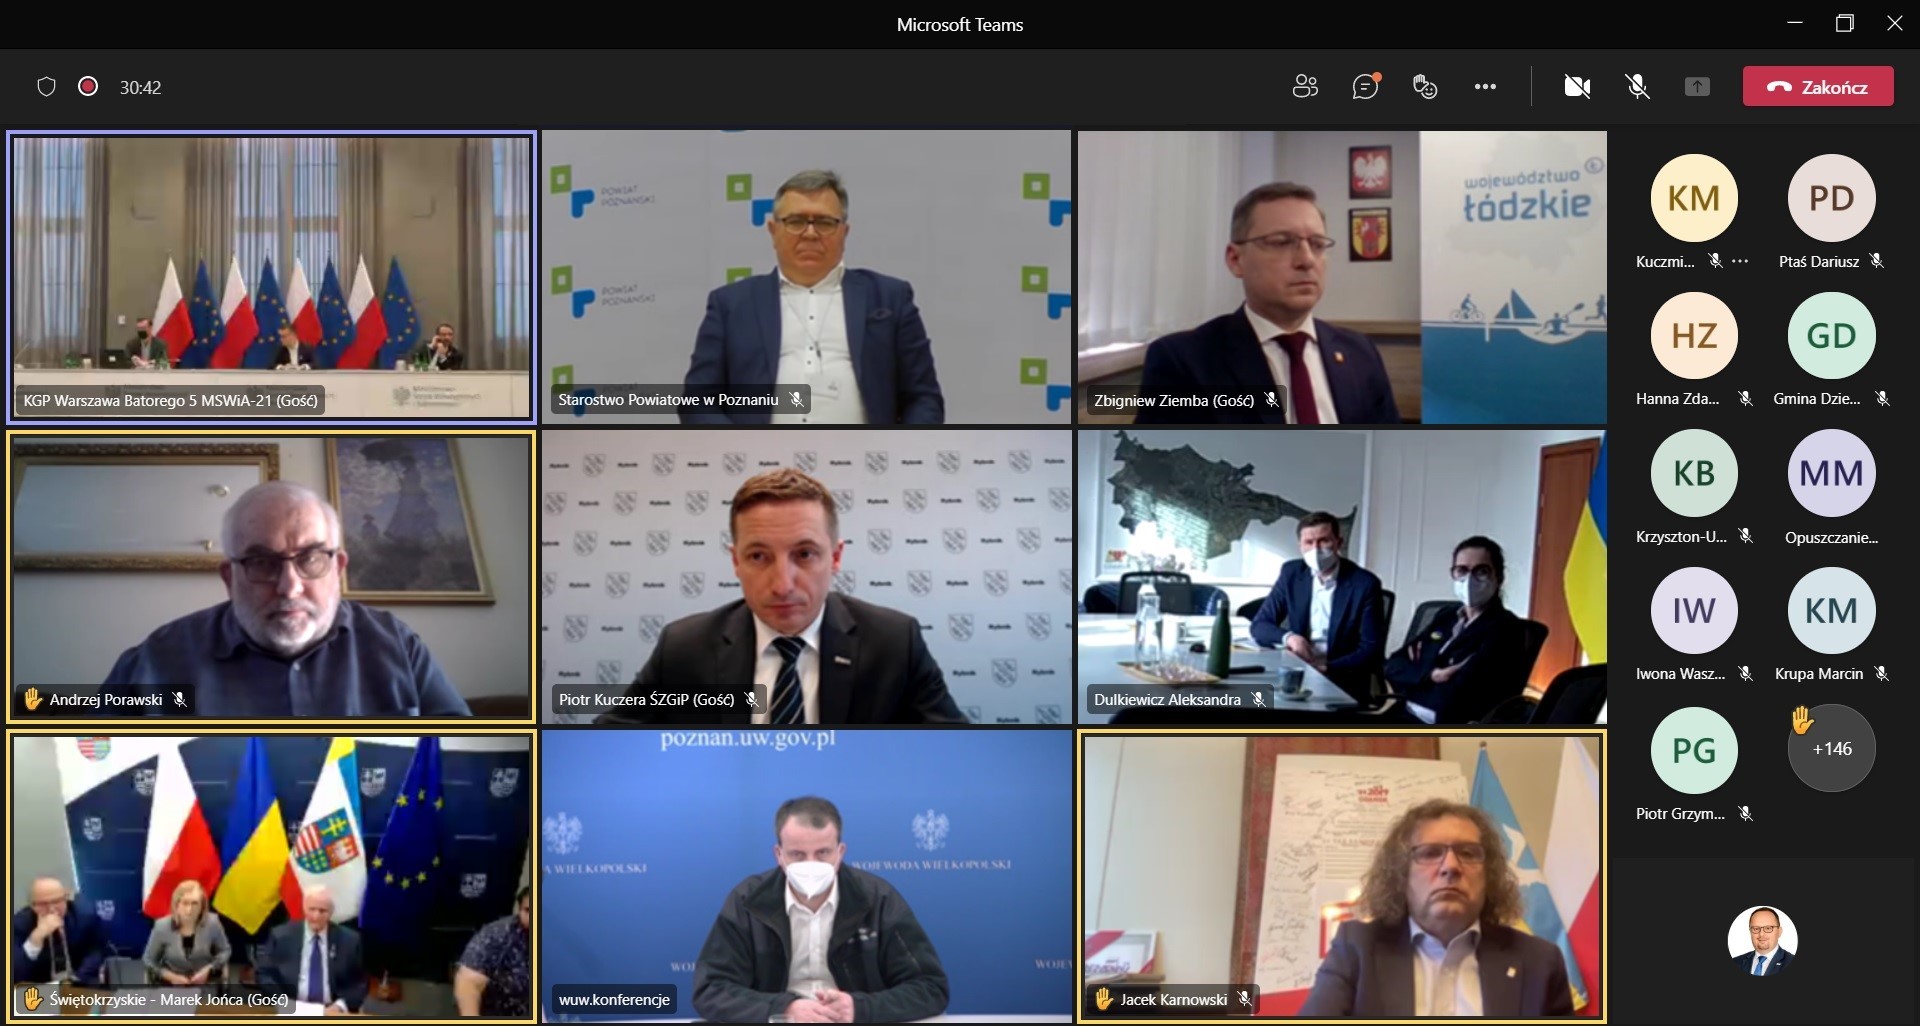 Kolejne nadzwyczajne posiedzenie KWRiST w sprawie Ukrainy